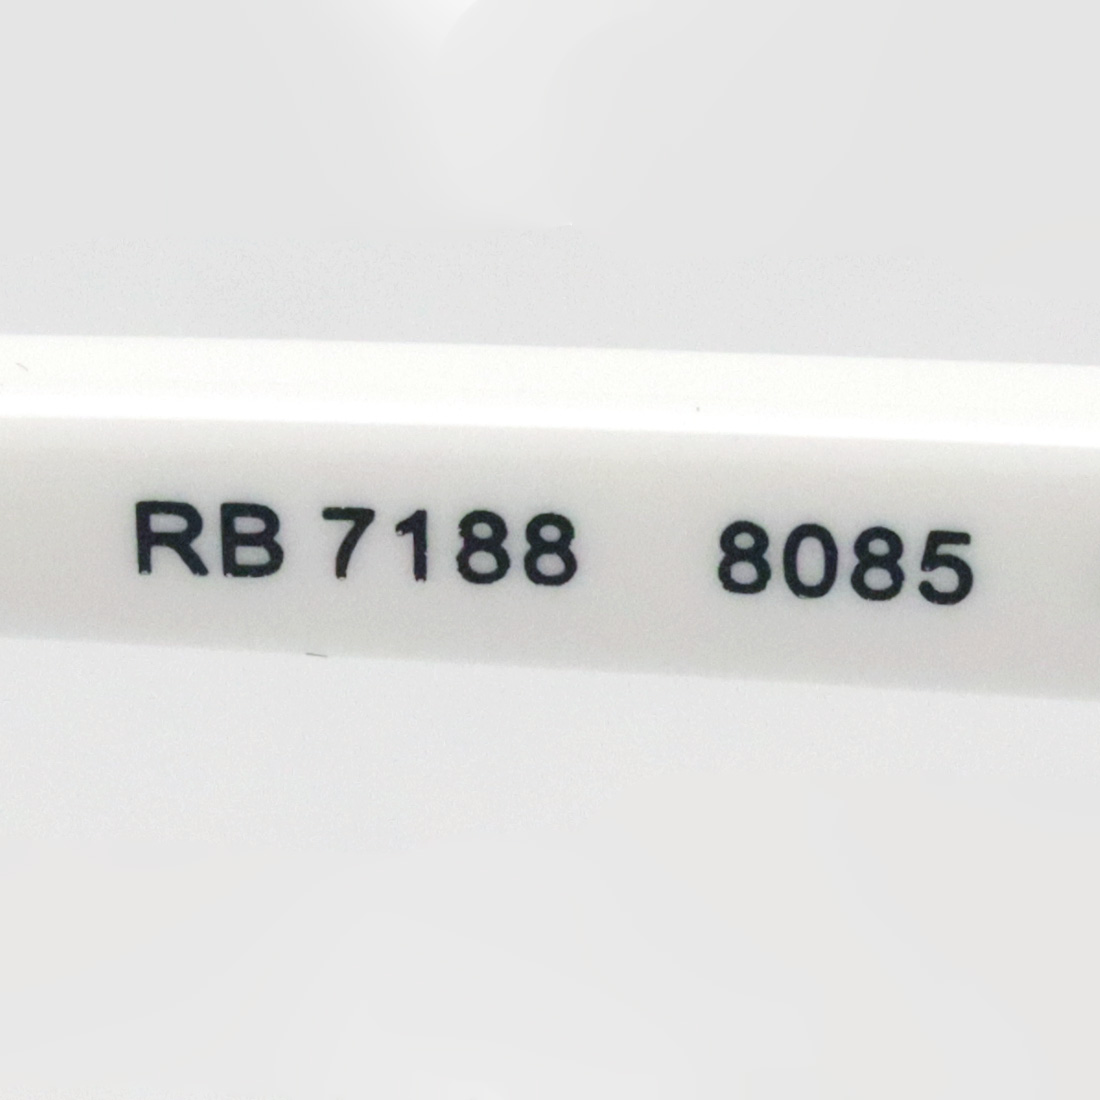 レイバン 眼鏡 サングラス 年中無休 17時までのご注文は即日発送 あす楽17時まで受付 全国送料無料 眼鏡 正規商品販売店 圧倒の3 000モデル以上の品揃え メガネ Newmodel Ray Ban フレーム Rx71 カット 度付き レイバン 正規レイバン日本最大級の品揃え 8085 伊達